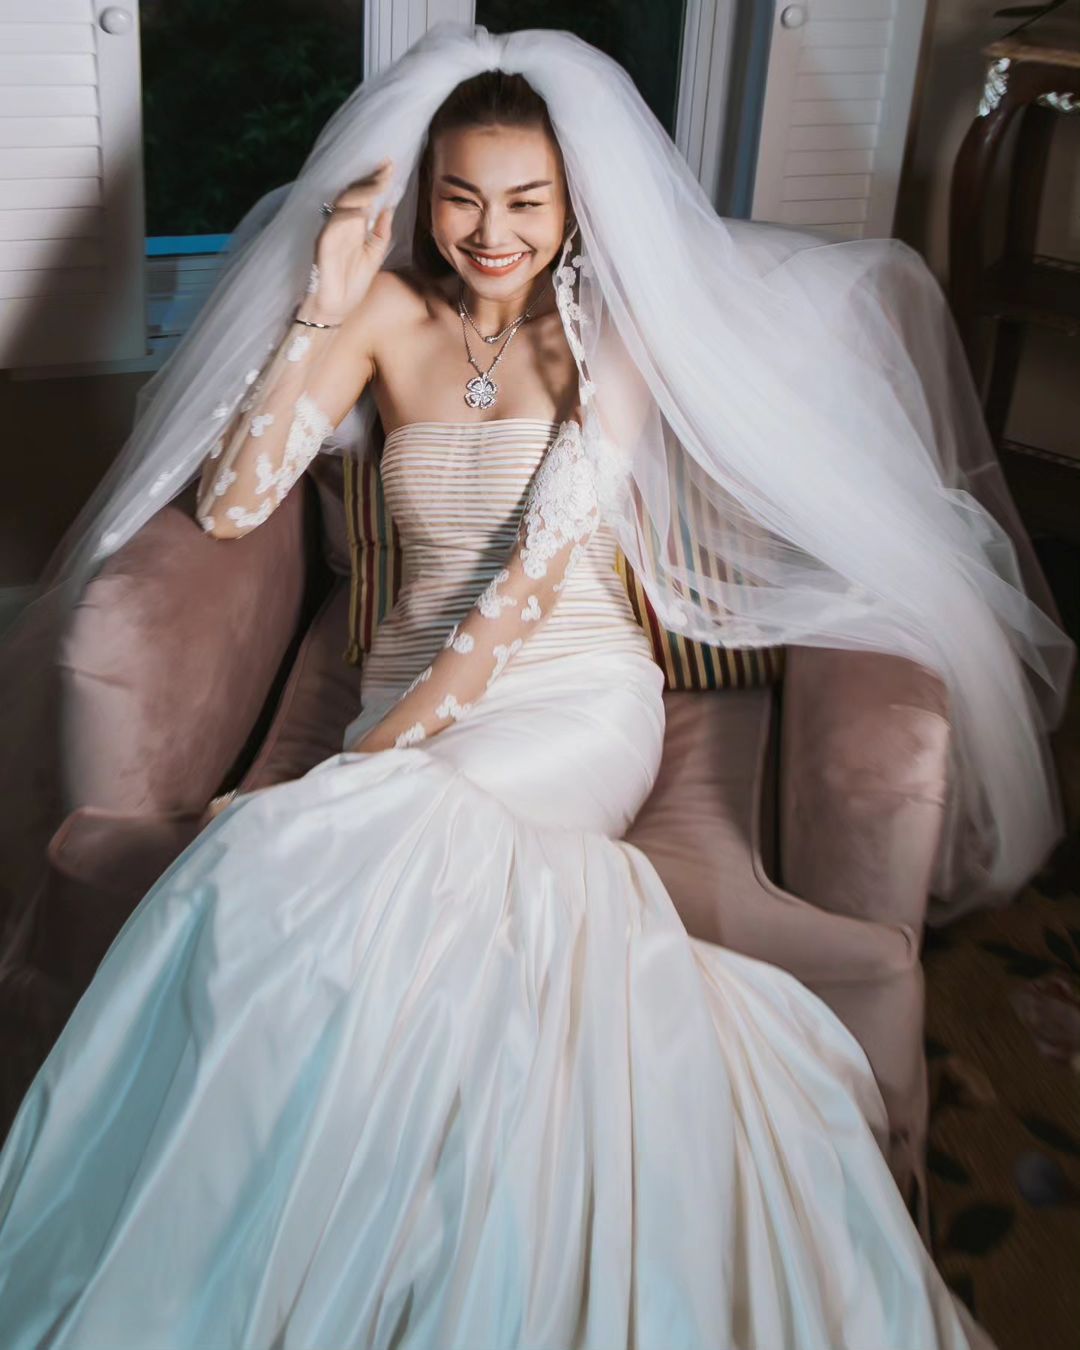 Thanh Hằng tung clip siêu ngọt bên chồng, Tăng Thanh Hà liền nhận xét điều này về cô dâu - Ảnh 2.